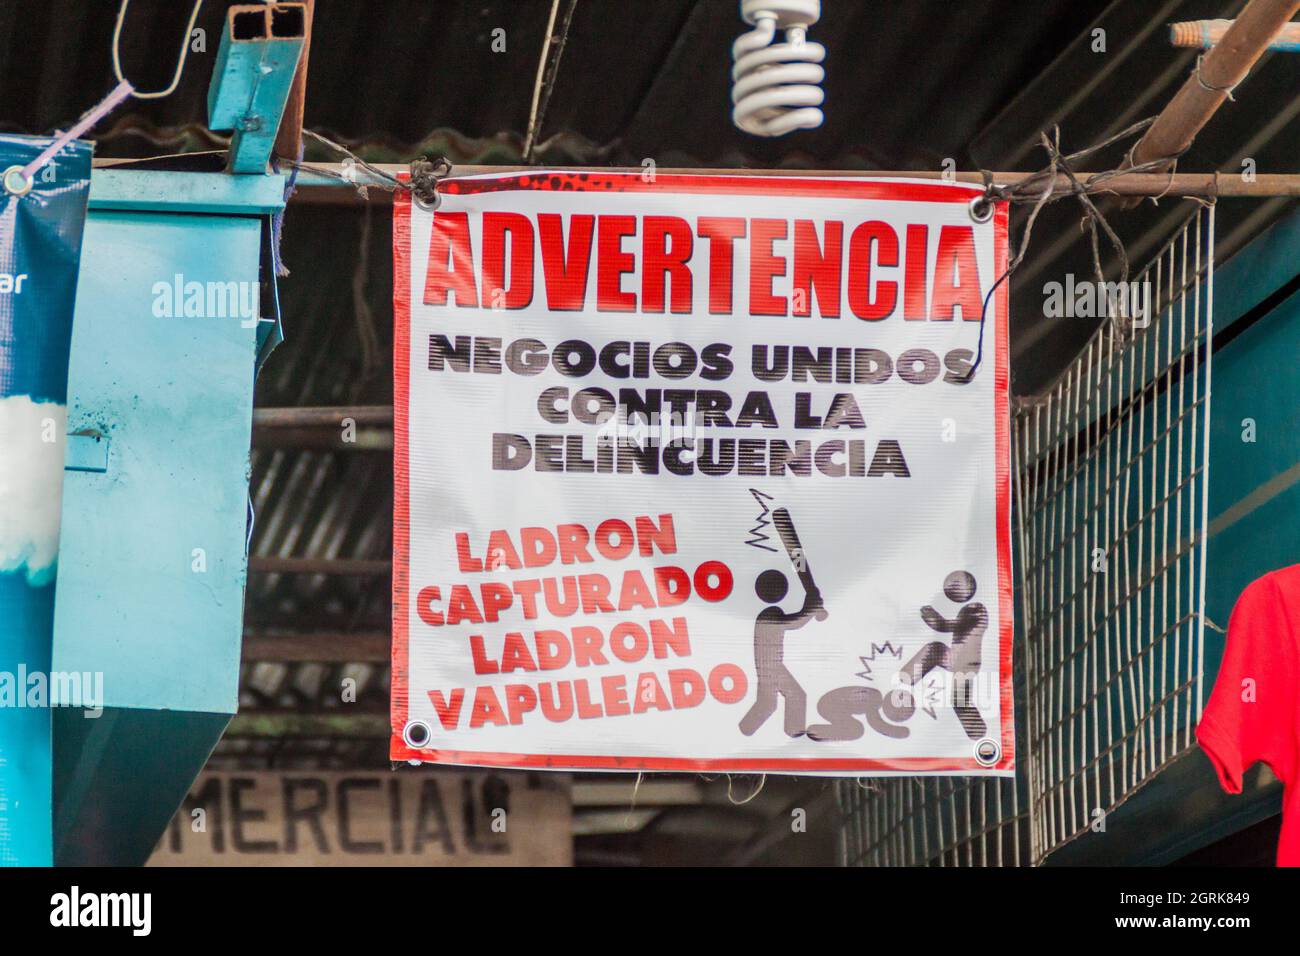 ANTIGUA, GUATEMALA - 27 DE MARZO de 2016: Señal de advertencia en el mercado de Antigua Guatemala. Dice: Advertencia. Empresas unidas contra la delincuencia. C Foto de stock